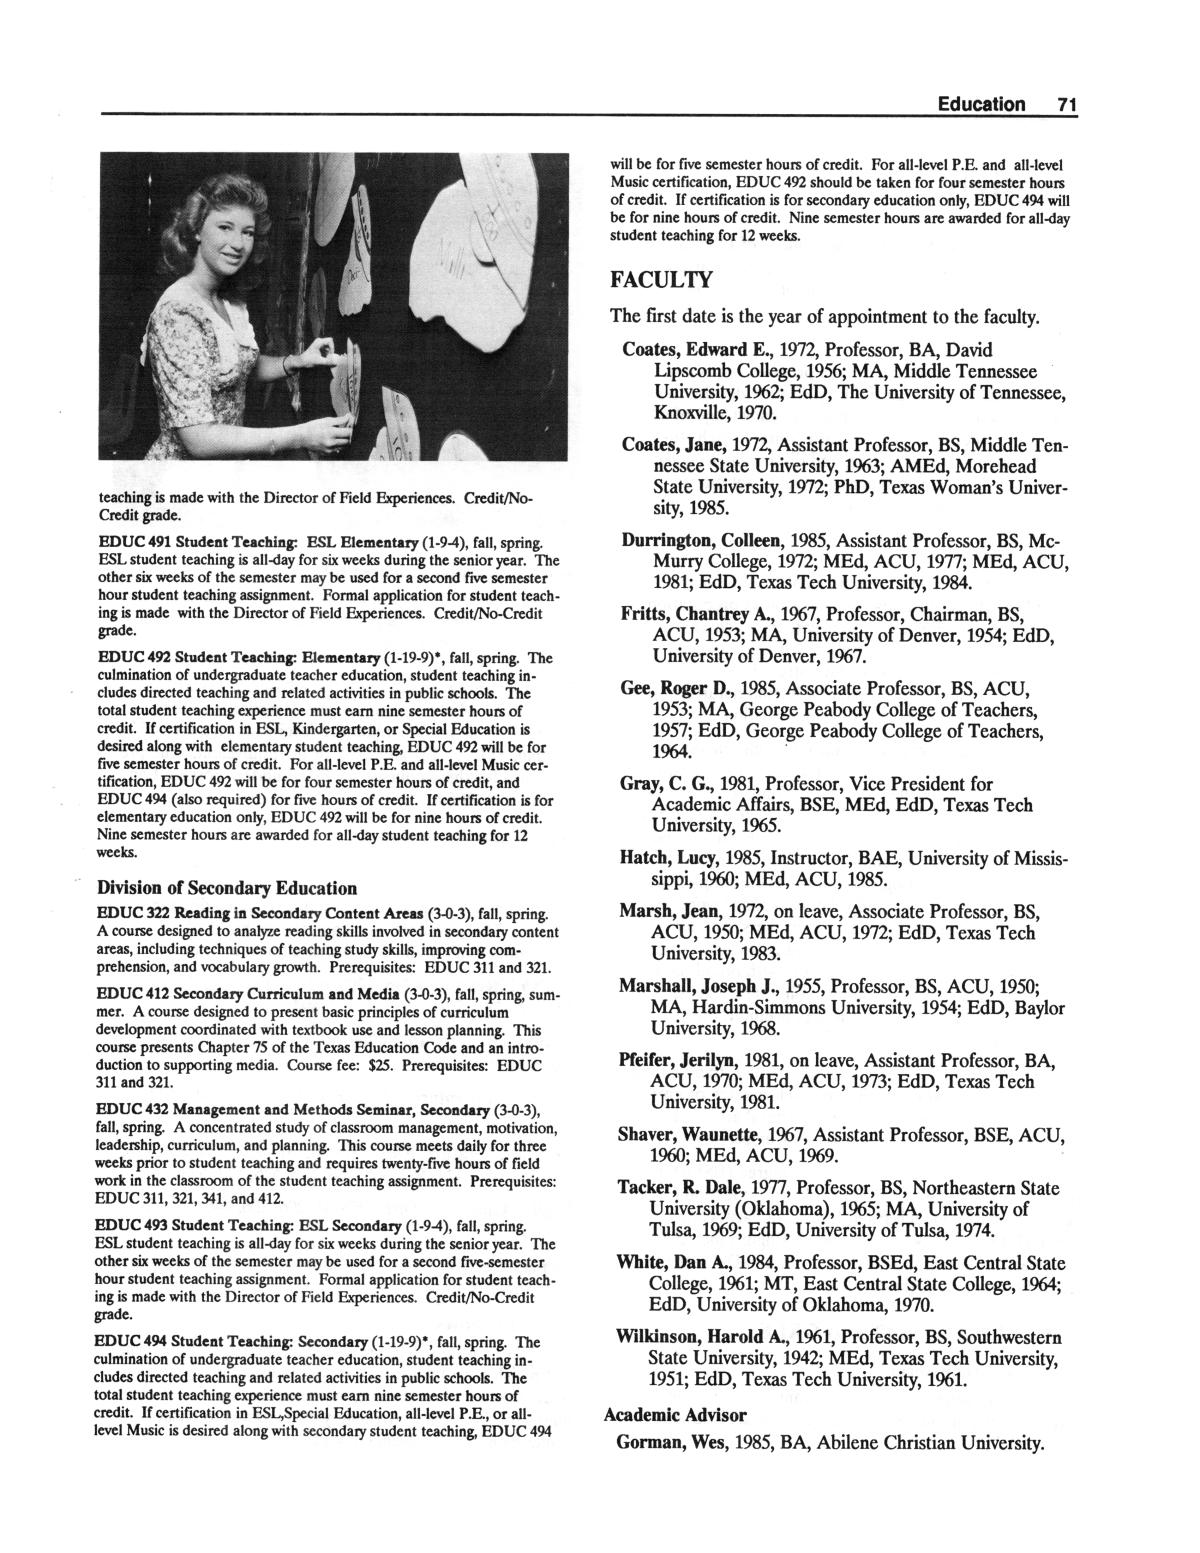 Catalog of Abilene Christian University, 1988-1989
                                                
                                                    71
                                                